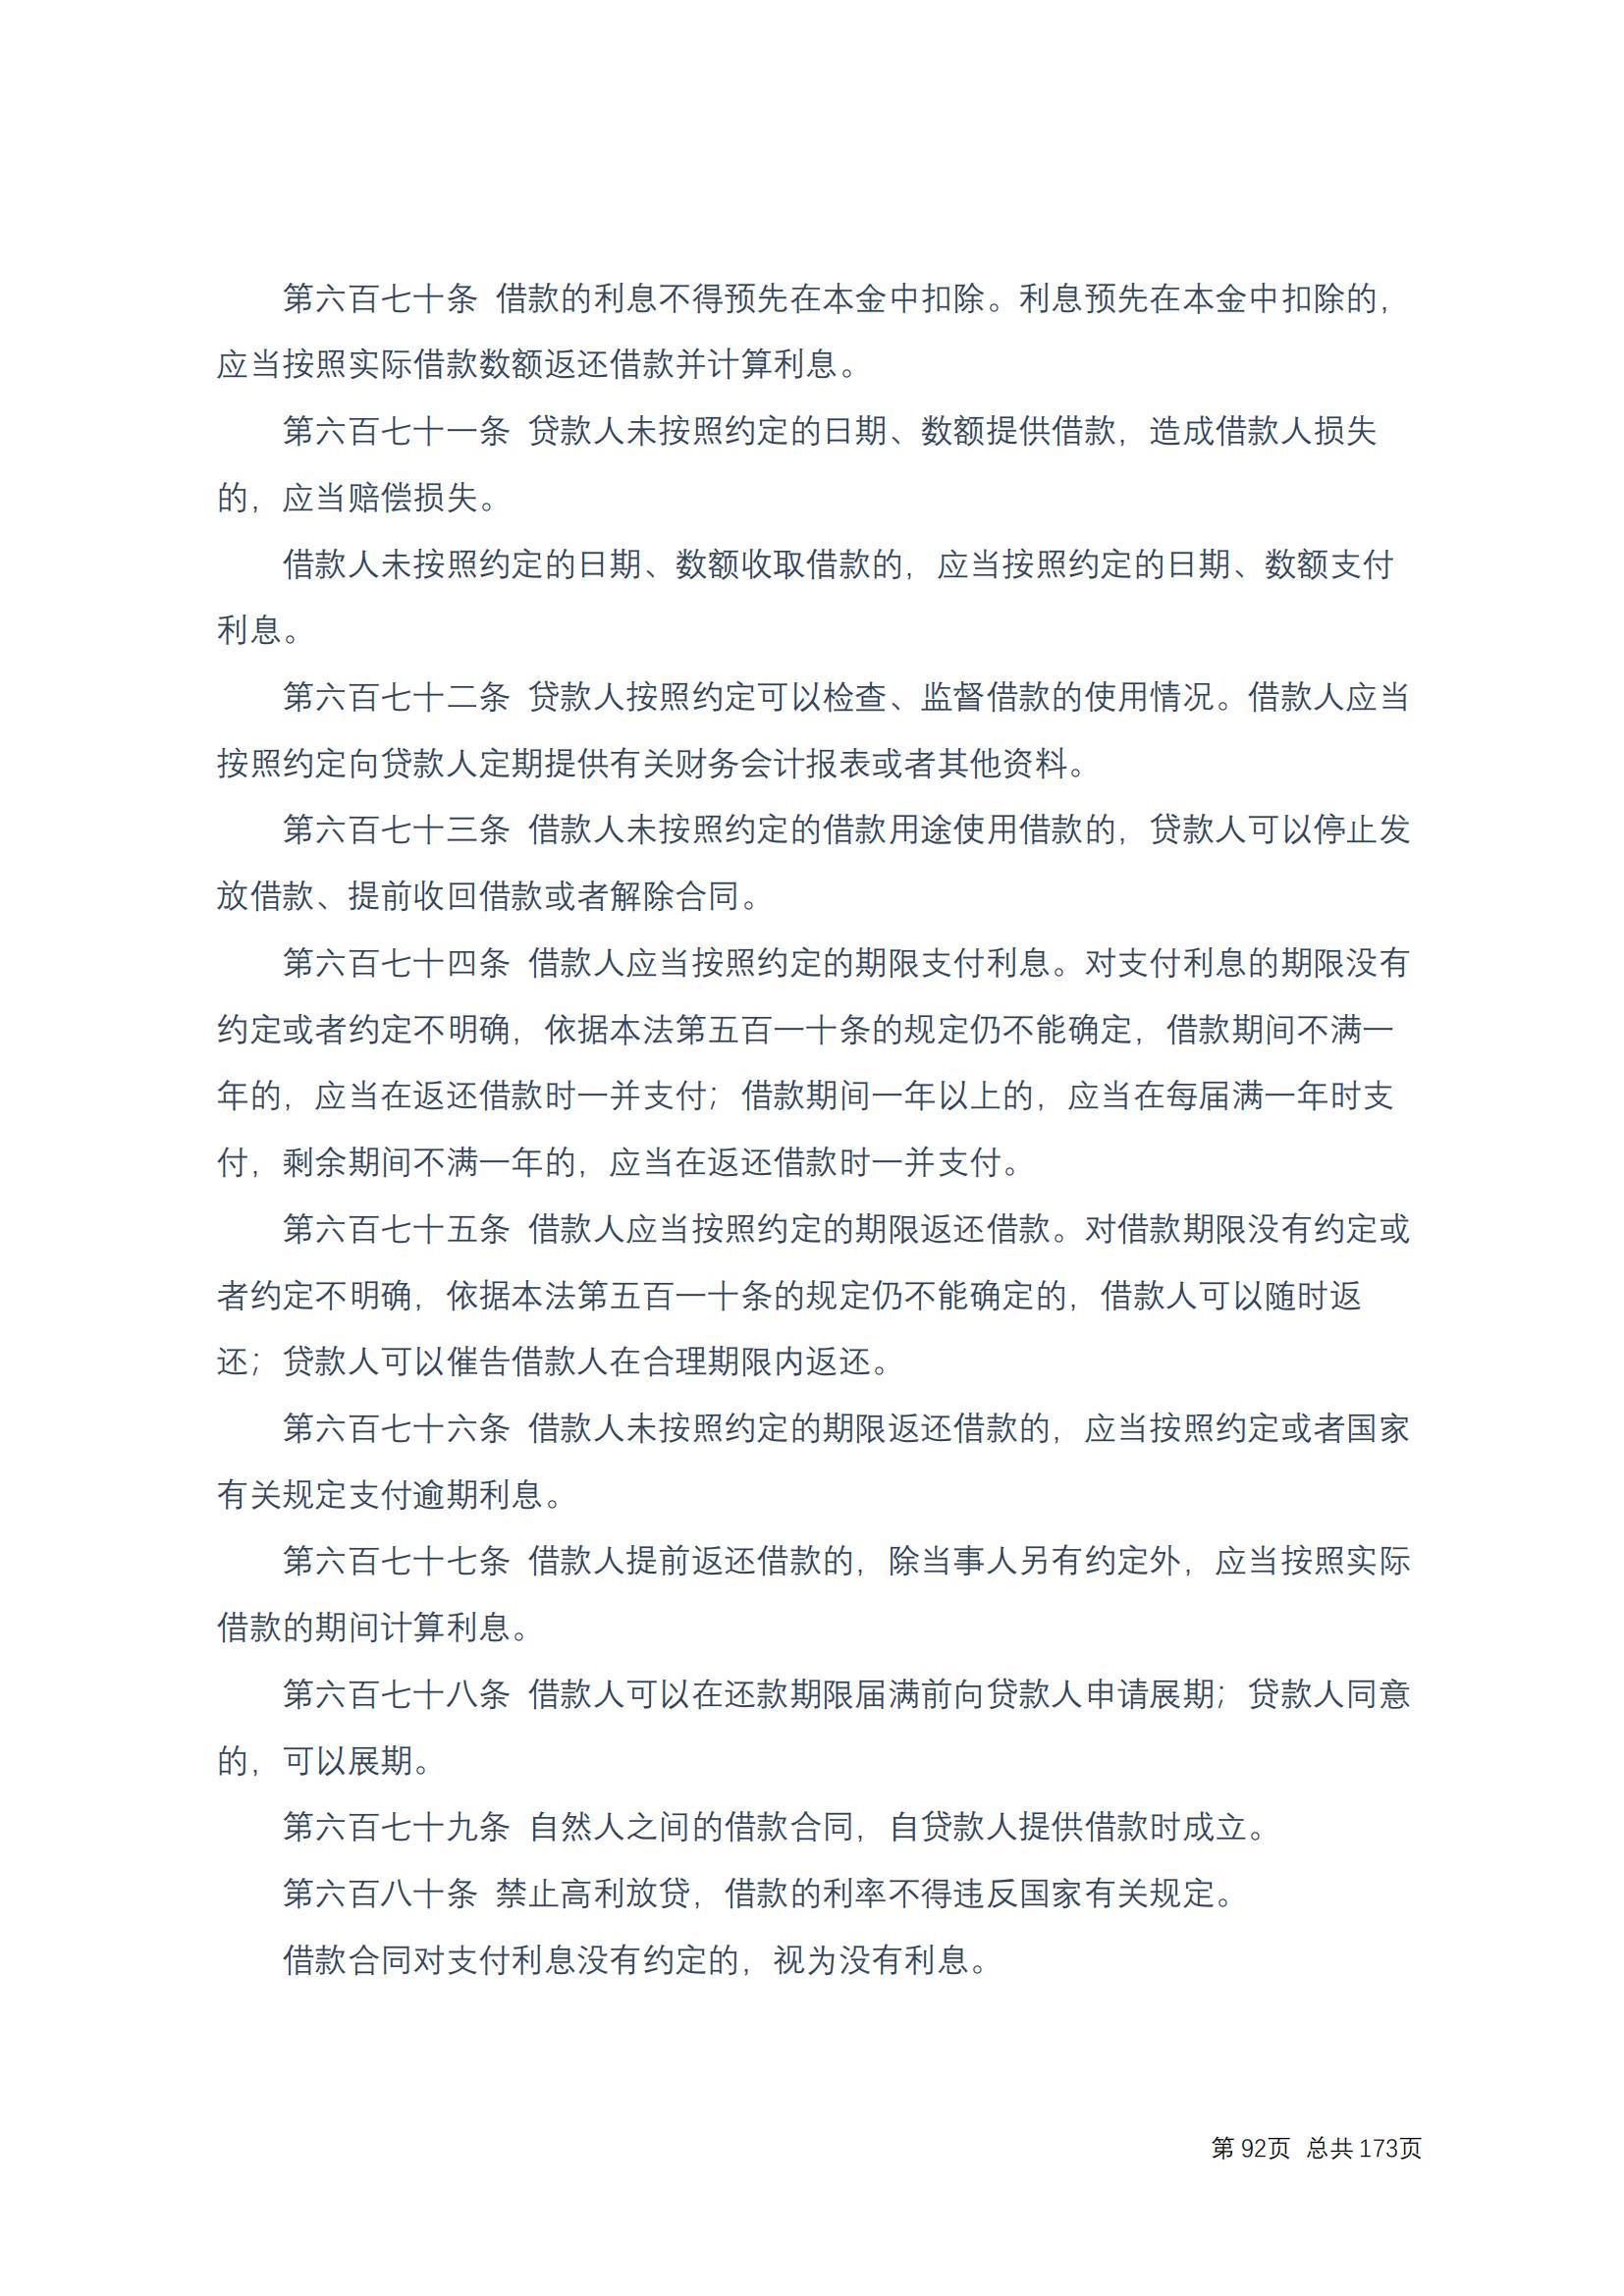 中华人民共和国民法典 修改过_91